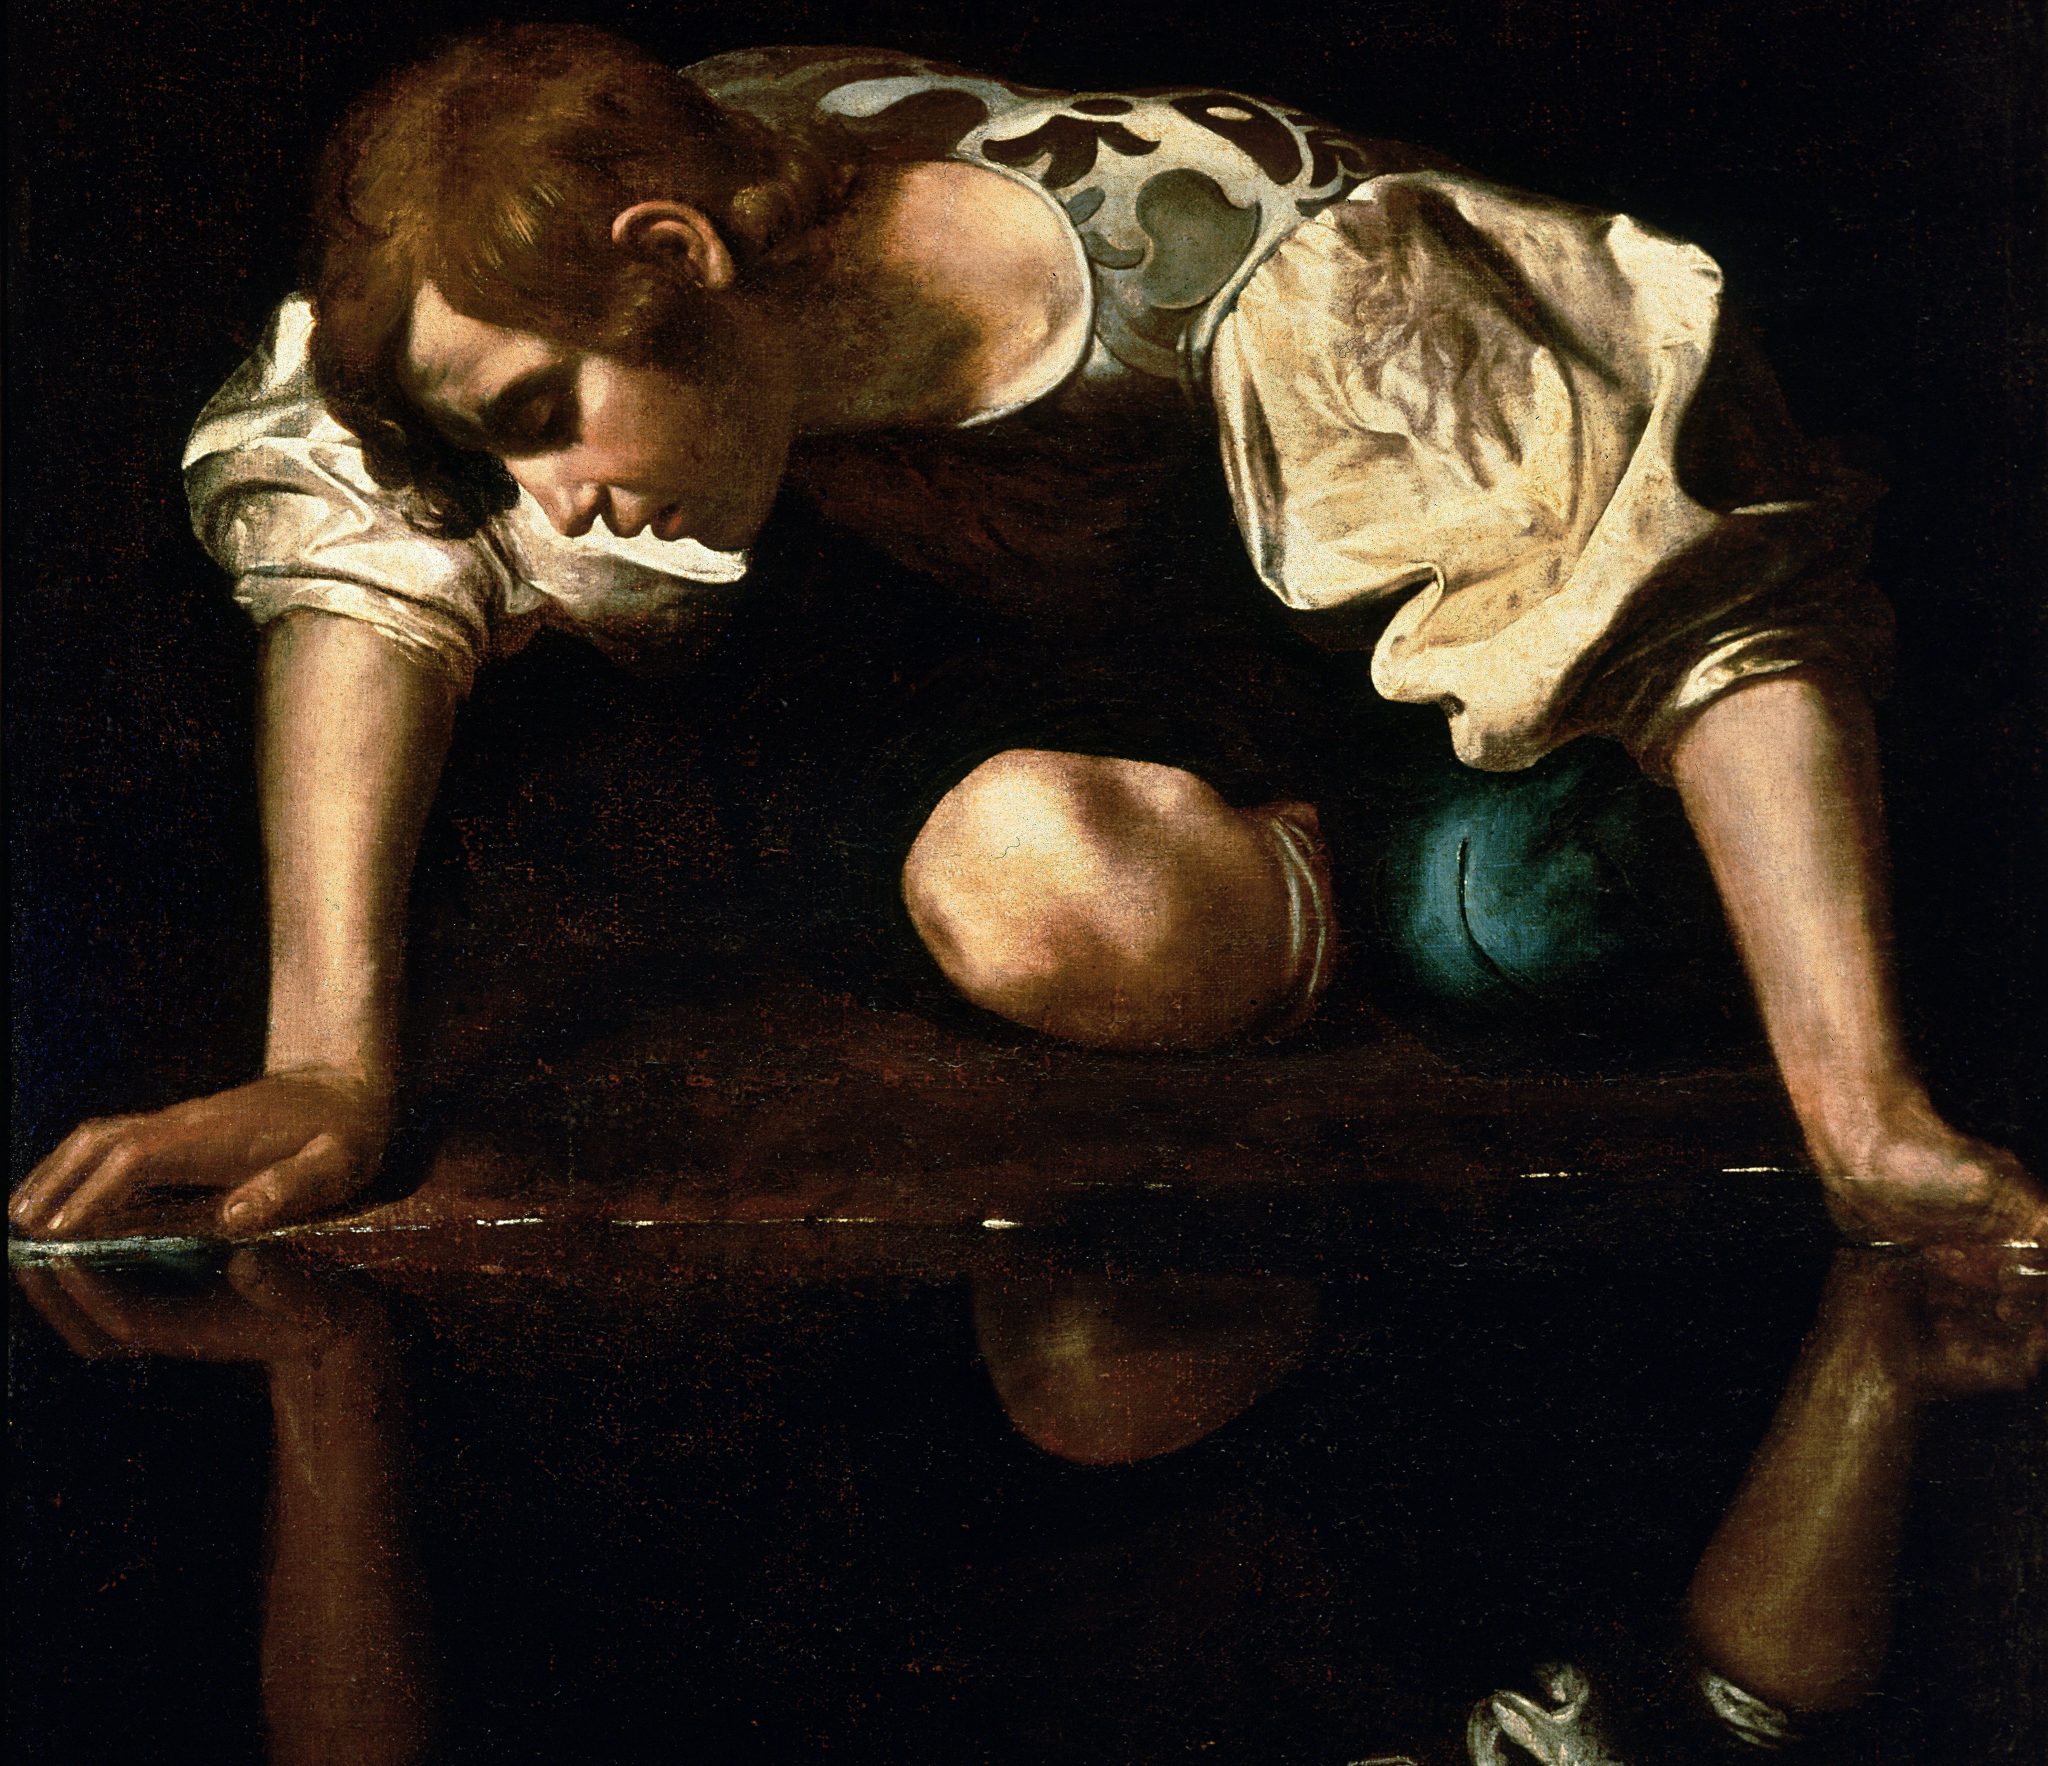 Caravaggio, Narcissus (detail), 1594-96